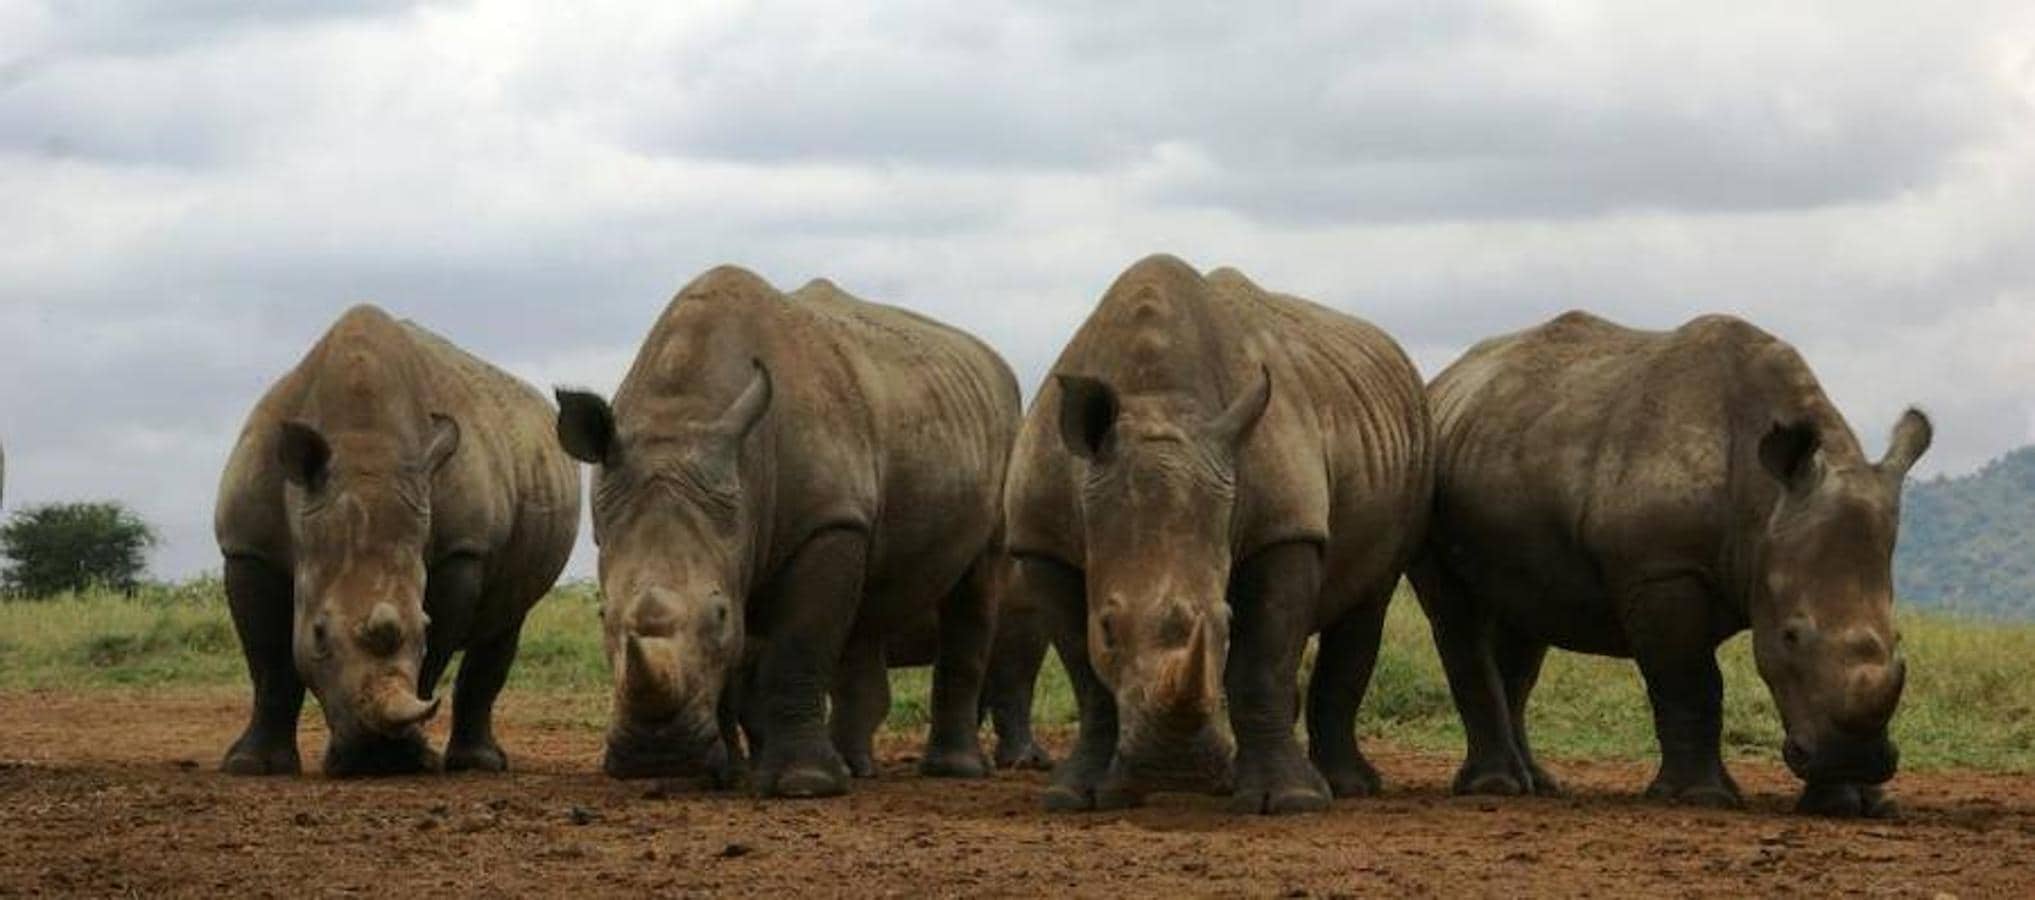 Tres rinocerontes menos cada día. Existe la falsa creencia, denuncia la ONG, de que el cuerno de rinoceronte actúa como tónico milagroso contra la resaca y las fiebres. En los últimos años ha repuntado su demanda porque se ha extendido en Vietnam la creencia de que también combate el cáncer.